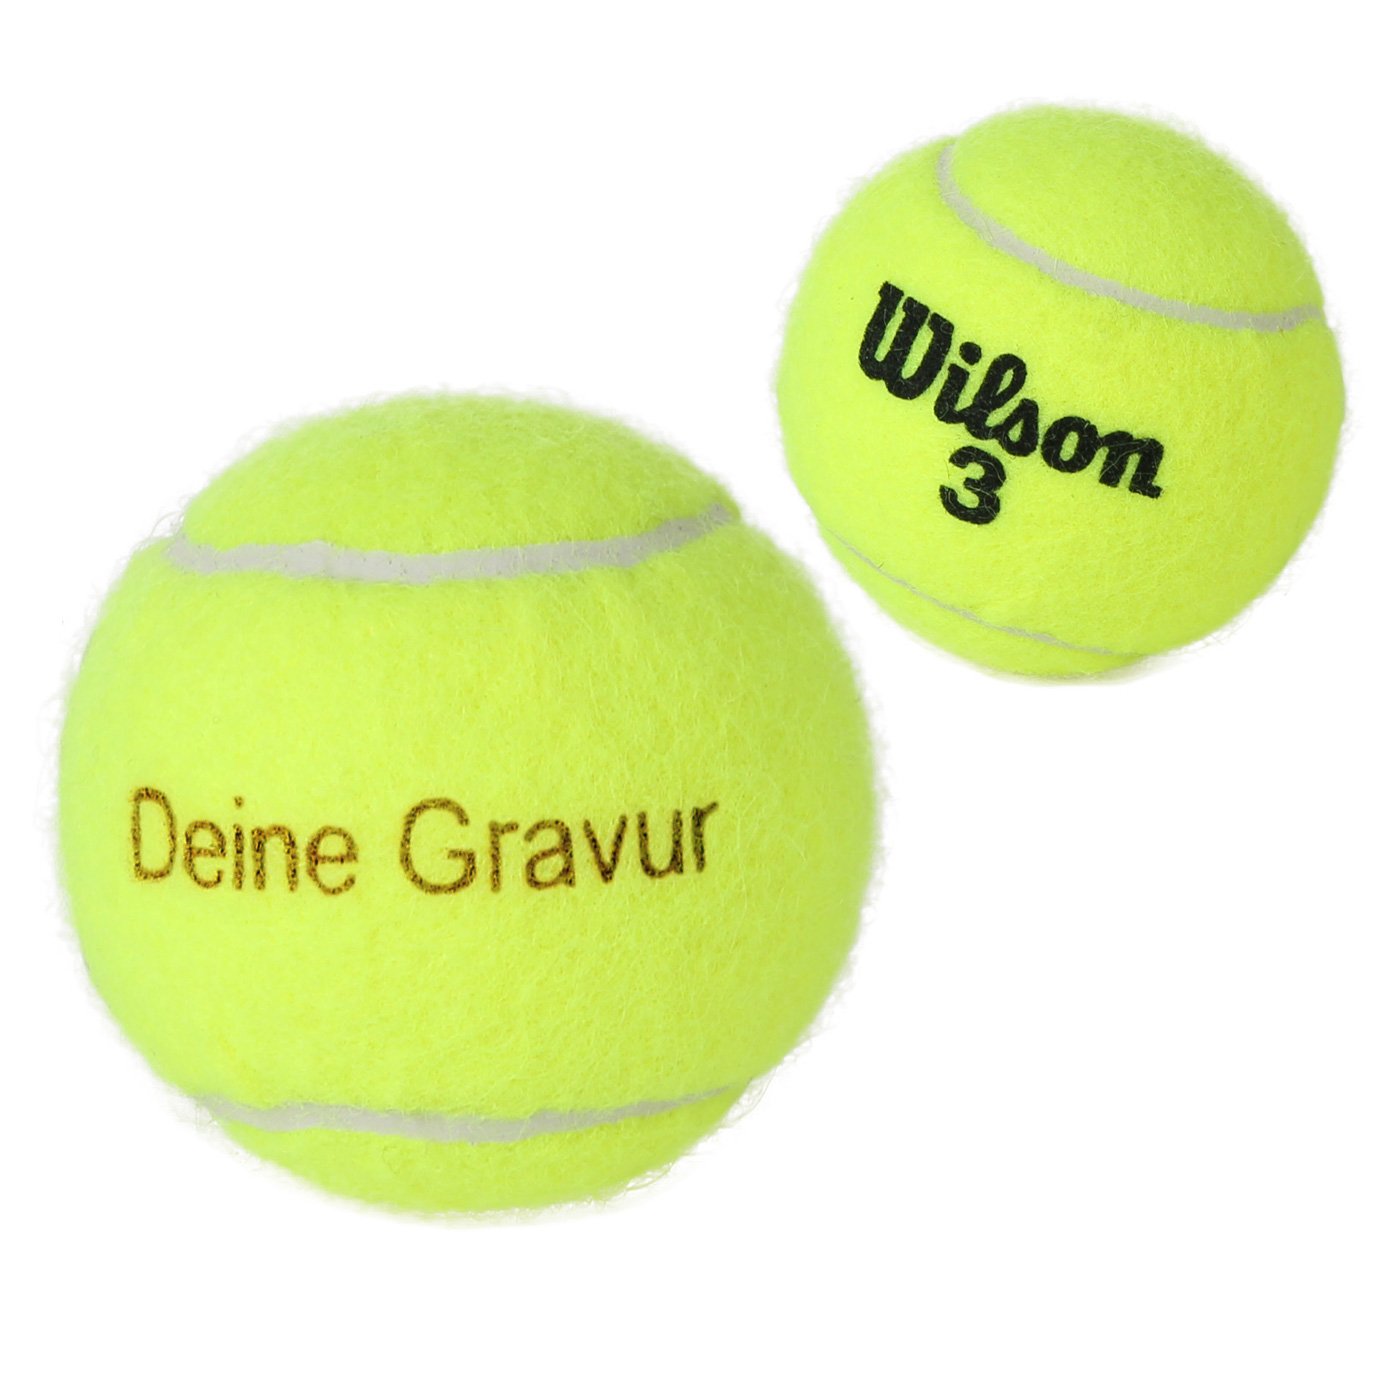 Tennisball Gravur 4 Tennisbälle mit Wunschgravur selbst gestalten